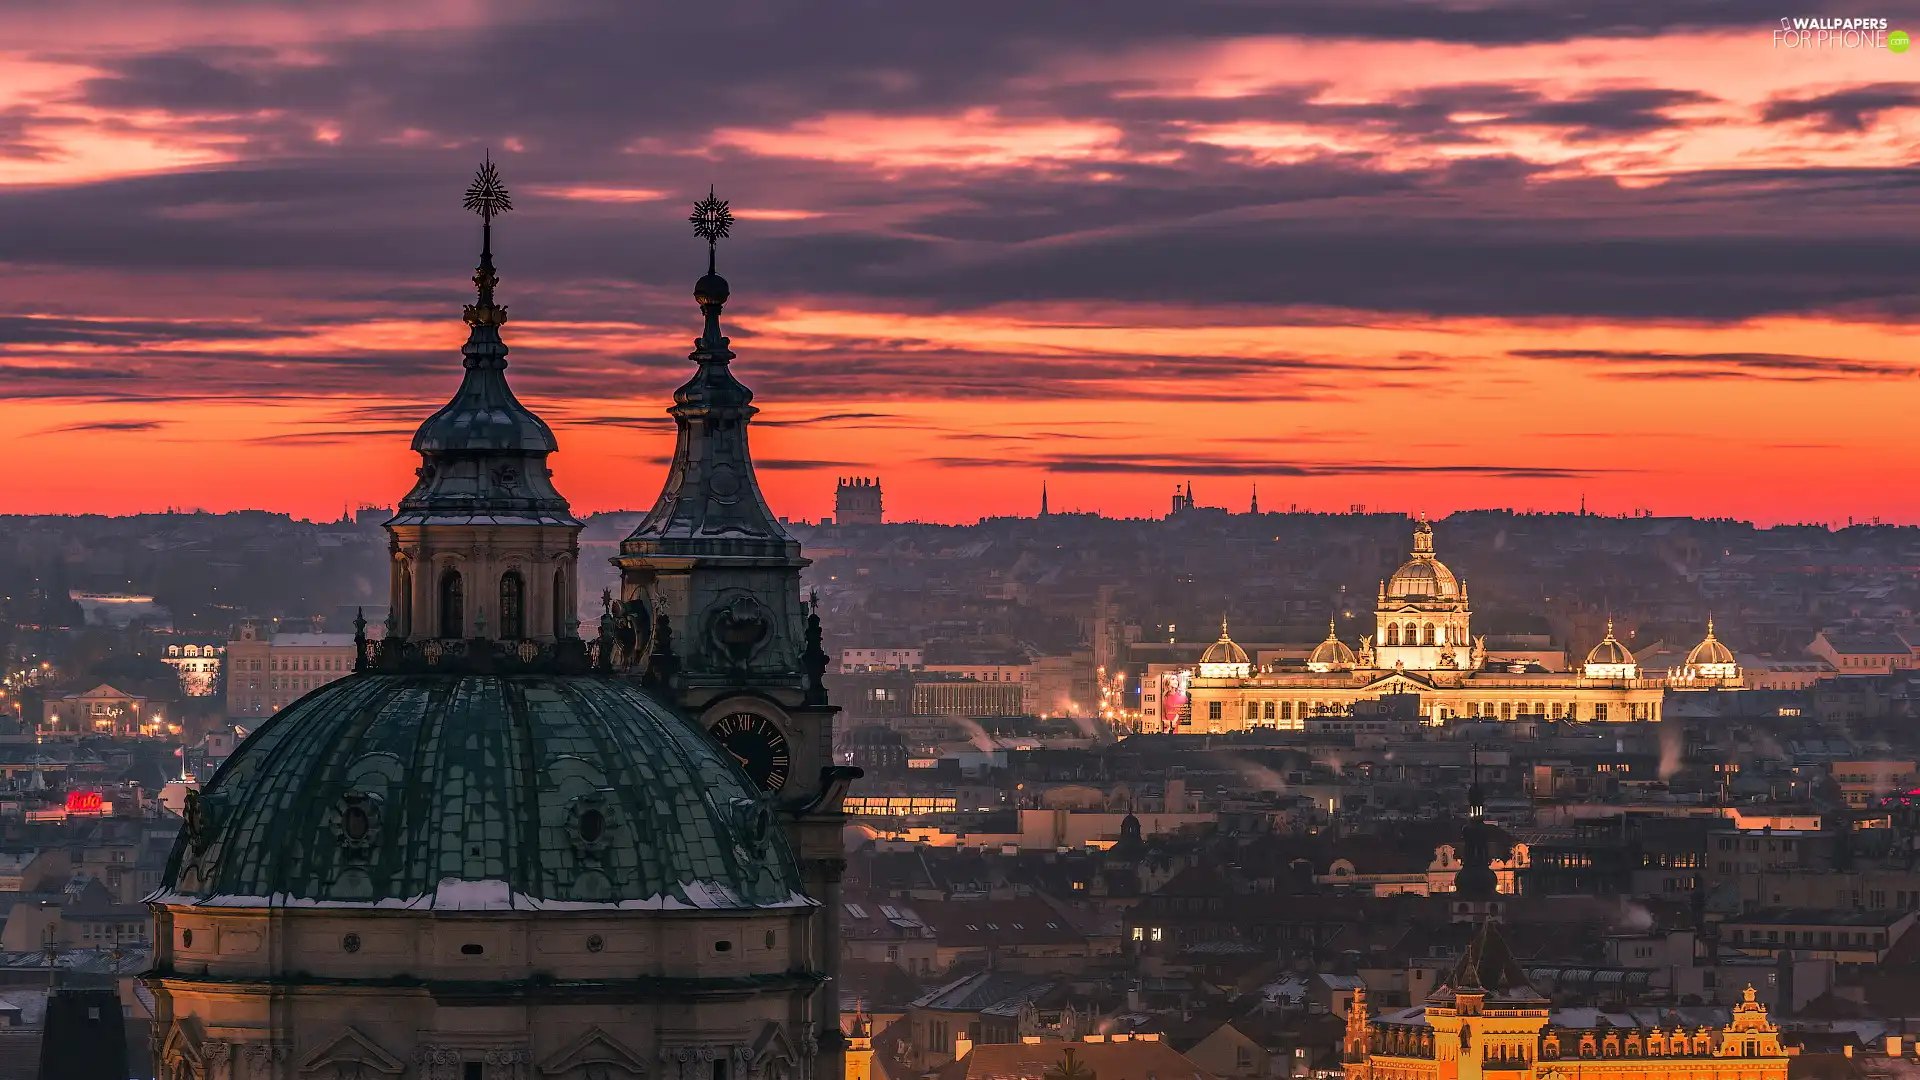 Prague, Great Sunsets, Czech Republic, chair